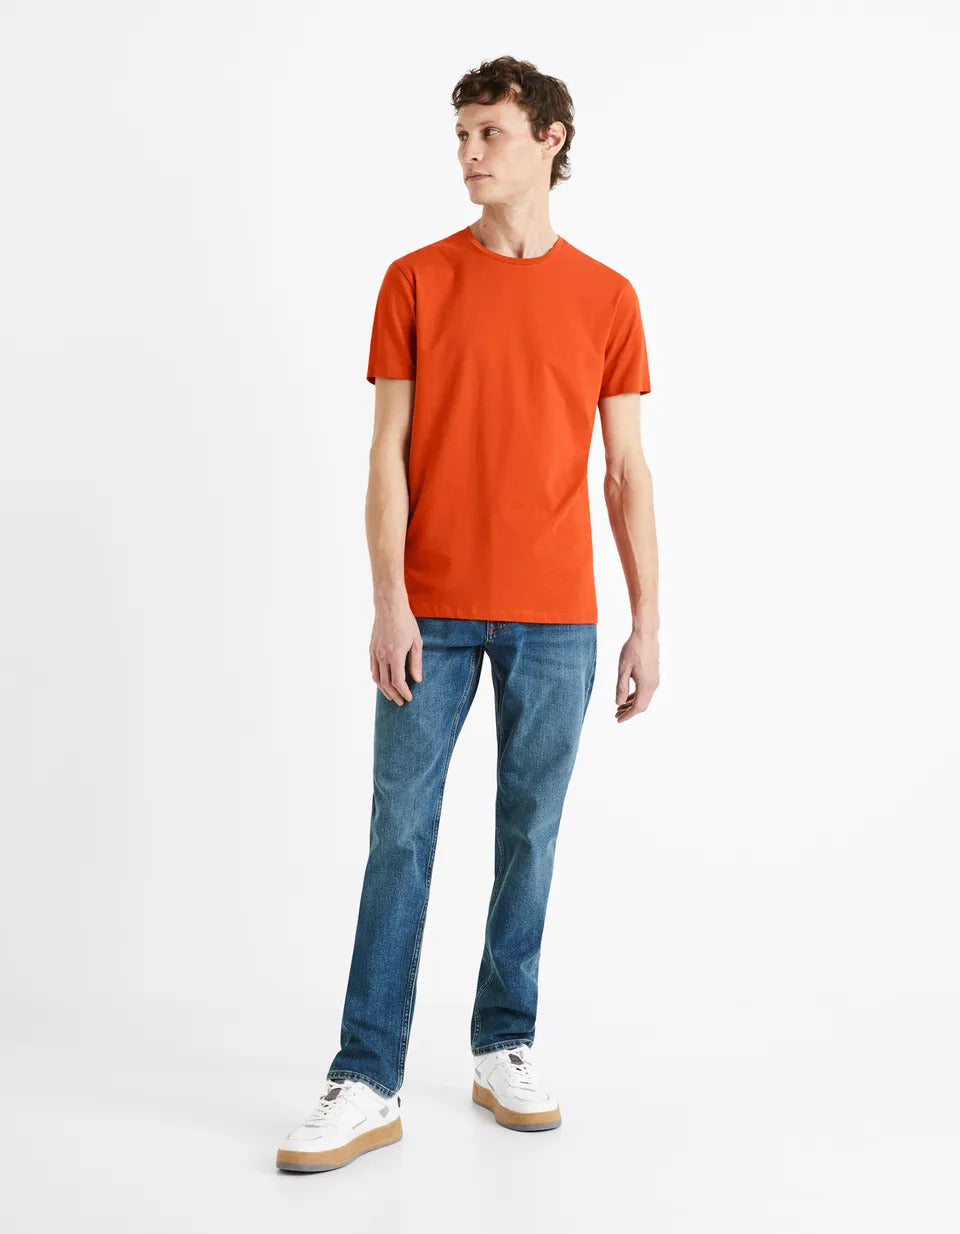 Orange Short Sleeve T-shirt